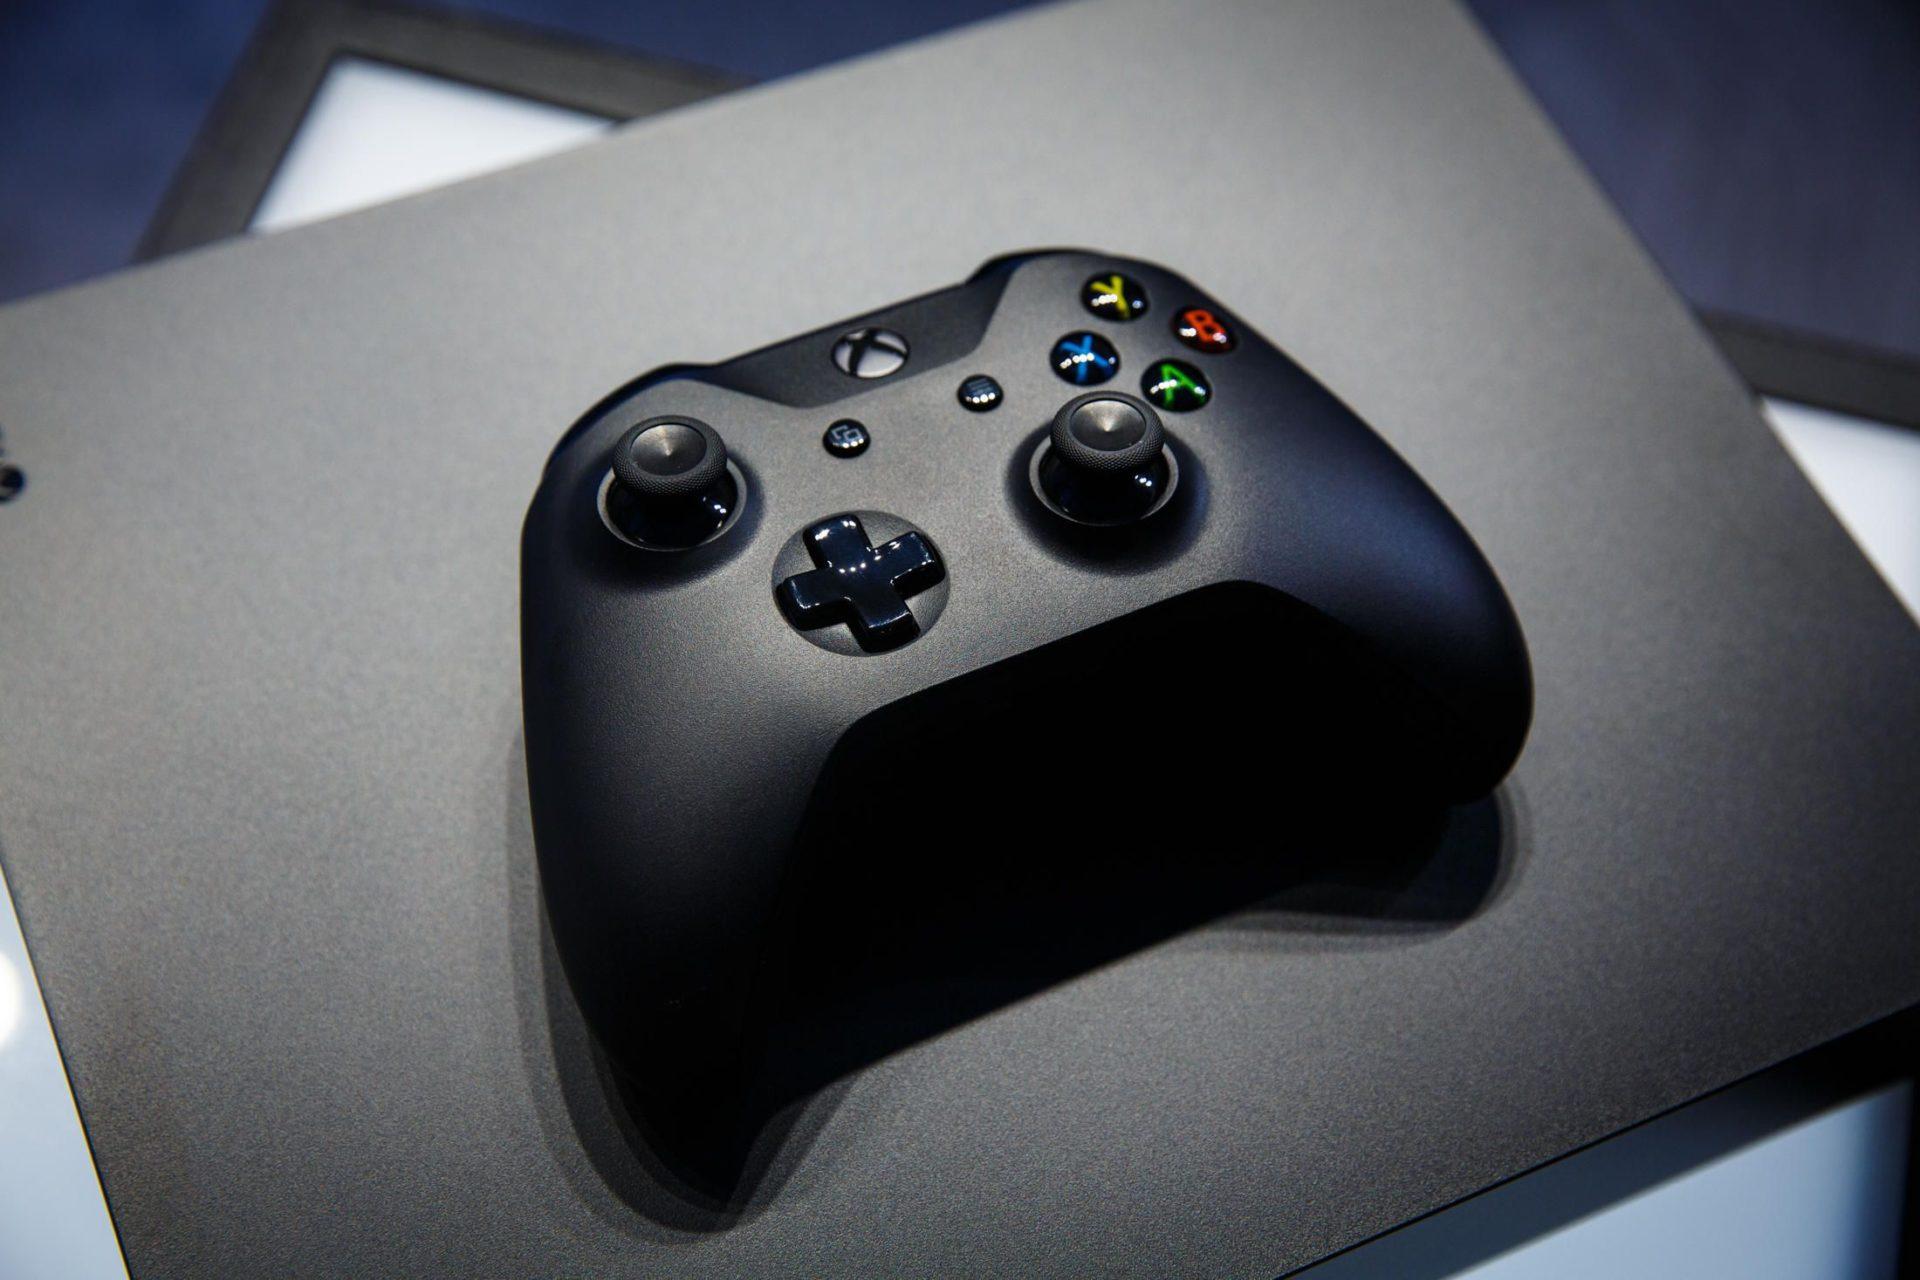 Exclusivos do Xbox podem aparecer no PS4 no futuro, diz Phil Spencer